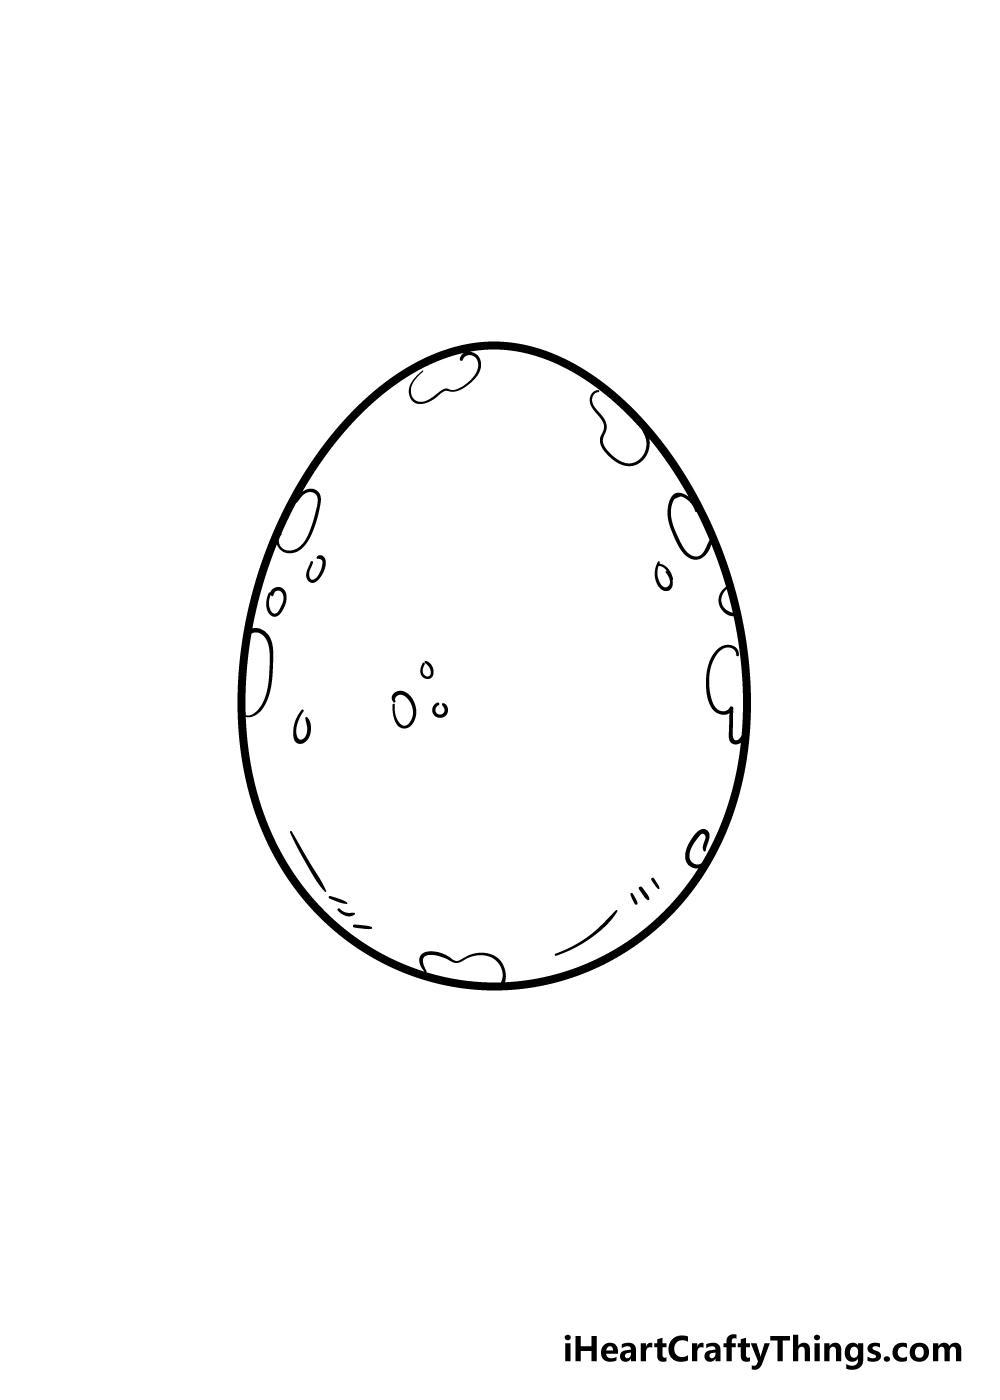 4 4 - Hướng dẫn cách vẽ quả trứng đơn giản và giản dị với 7 bước cơ bản